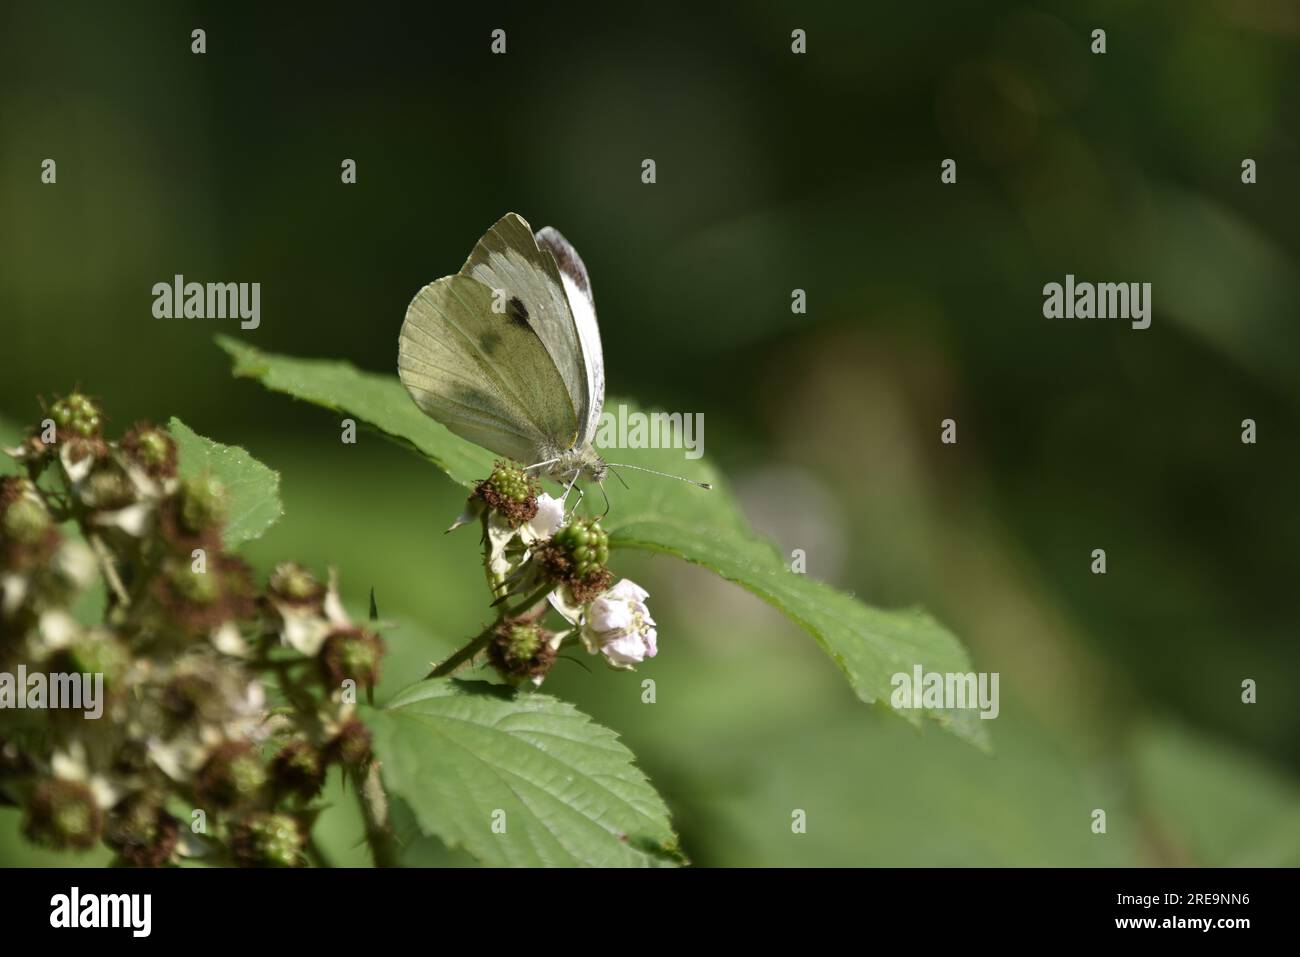 Immagine di fronte a destra di una grande farfalla bianca (Pieris brassicae) che mostra caratteristiche facciali affilate, appollaiate su un fiore di mora, in Galles, Regno Unito Foto Stock